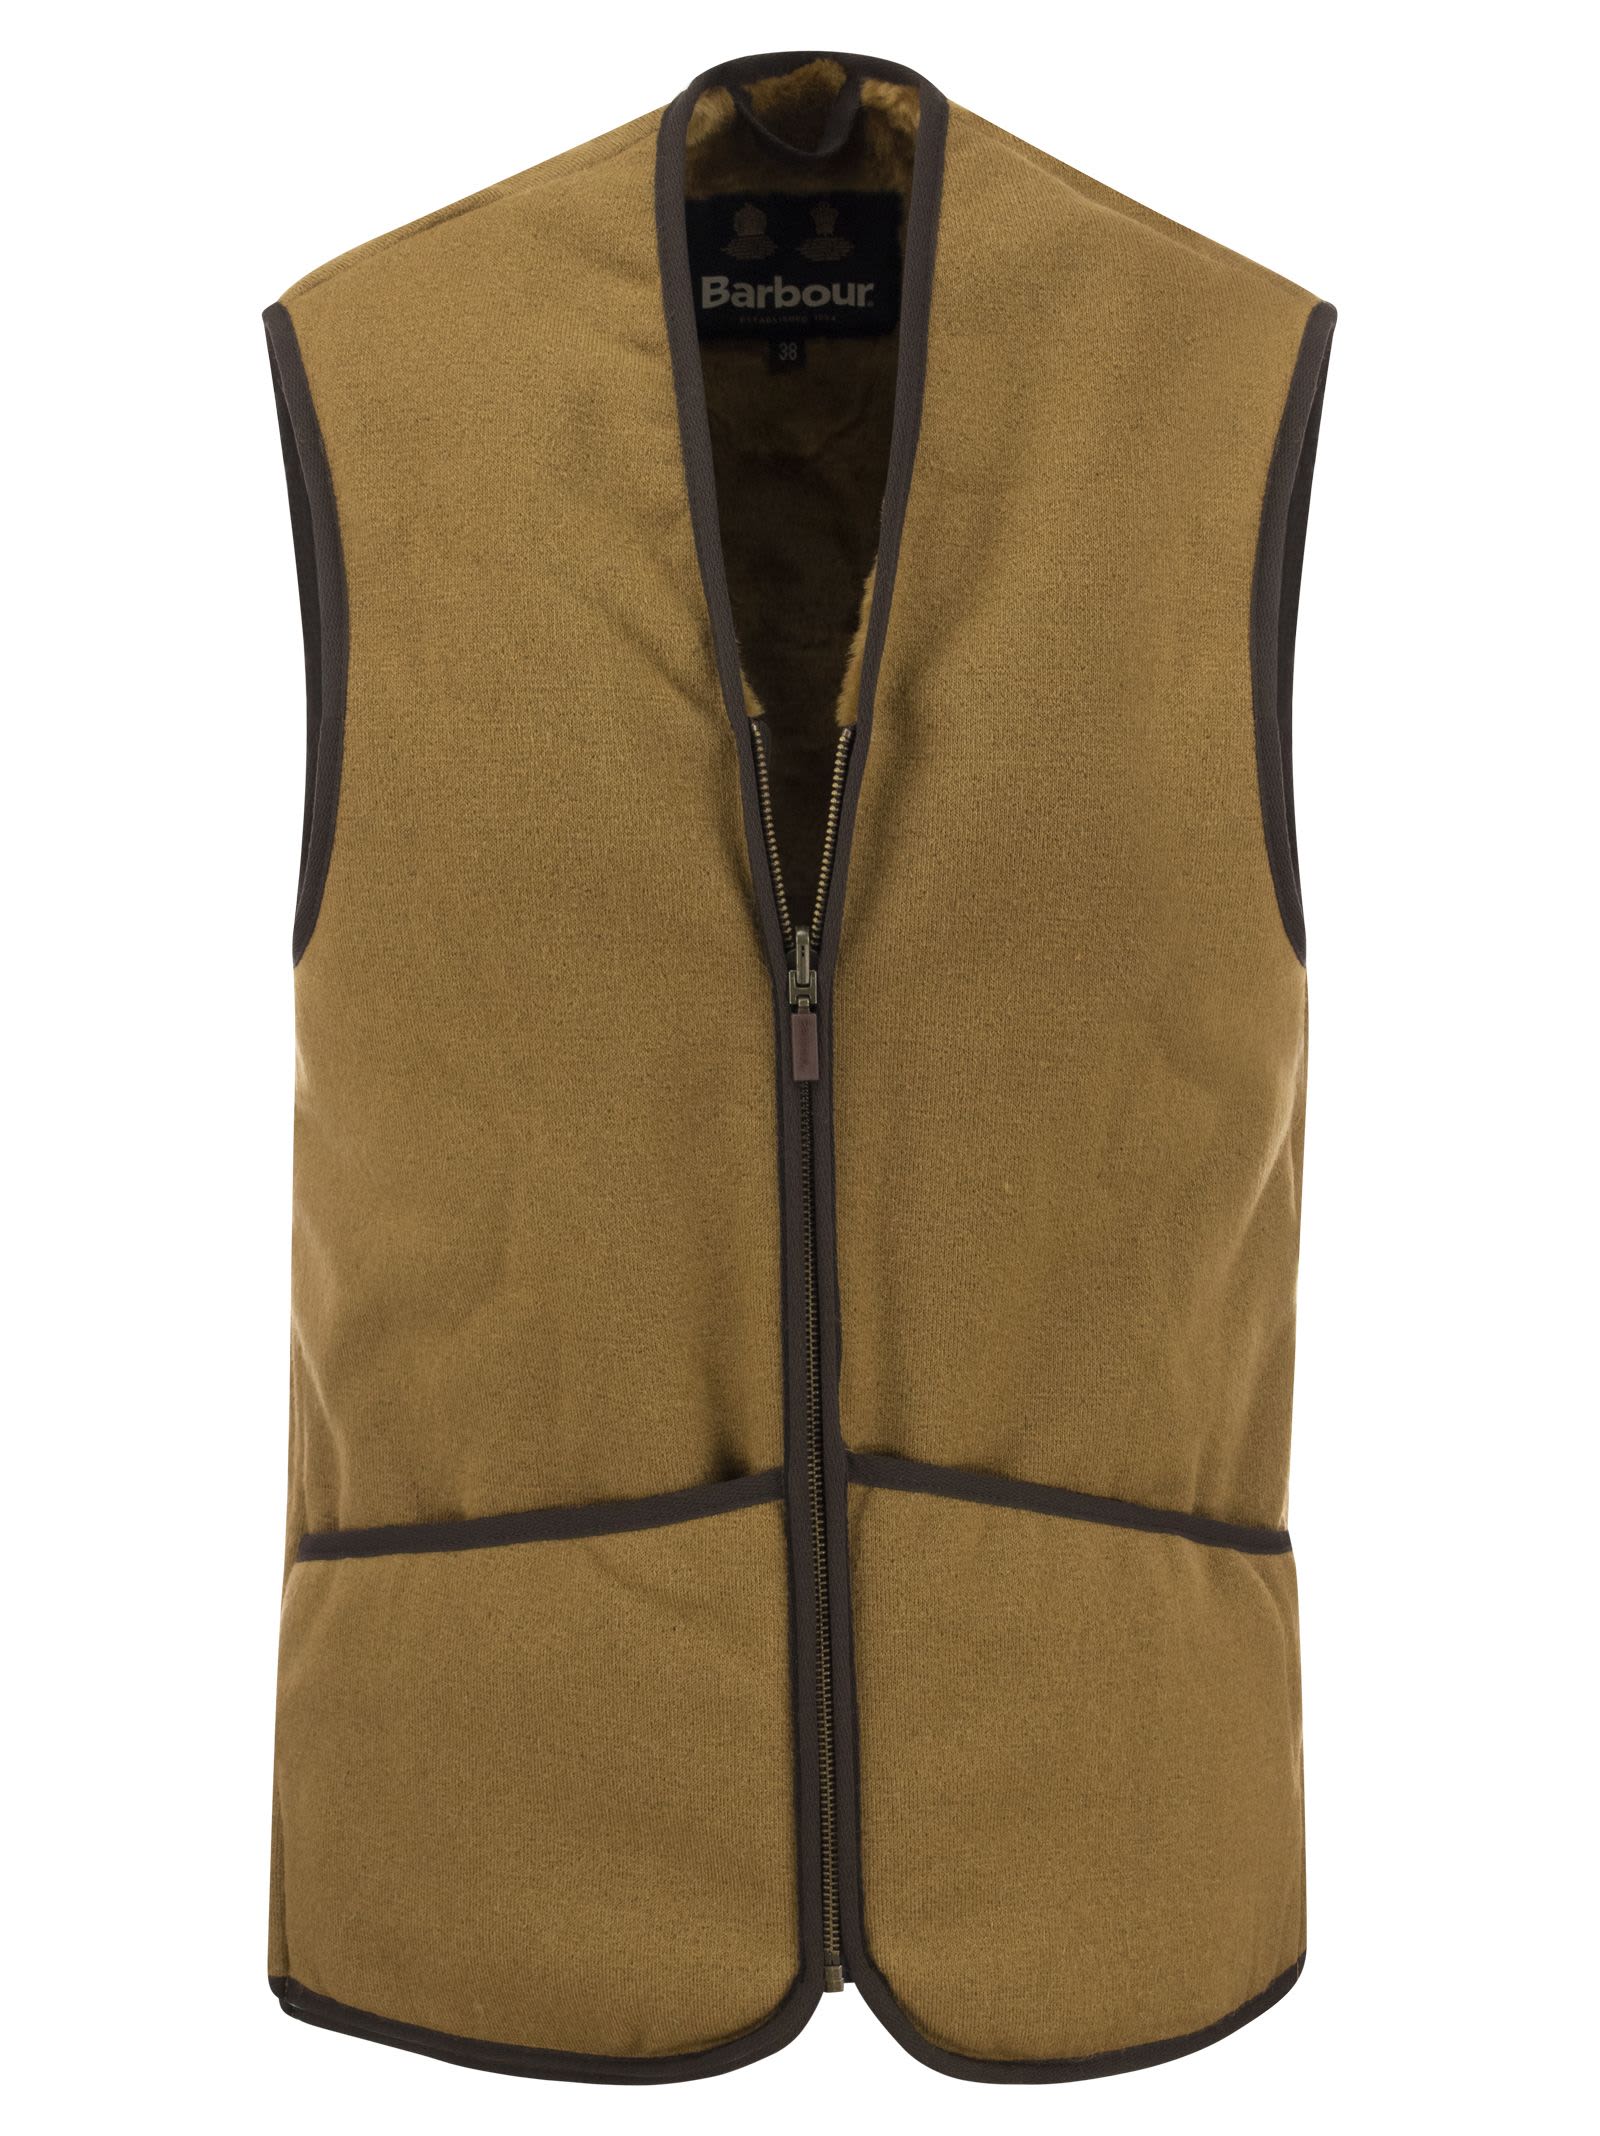 Barbour Warm Pile Waistcoat/zip-in Liner